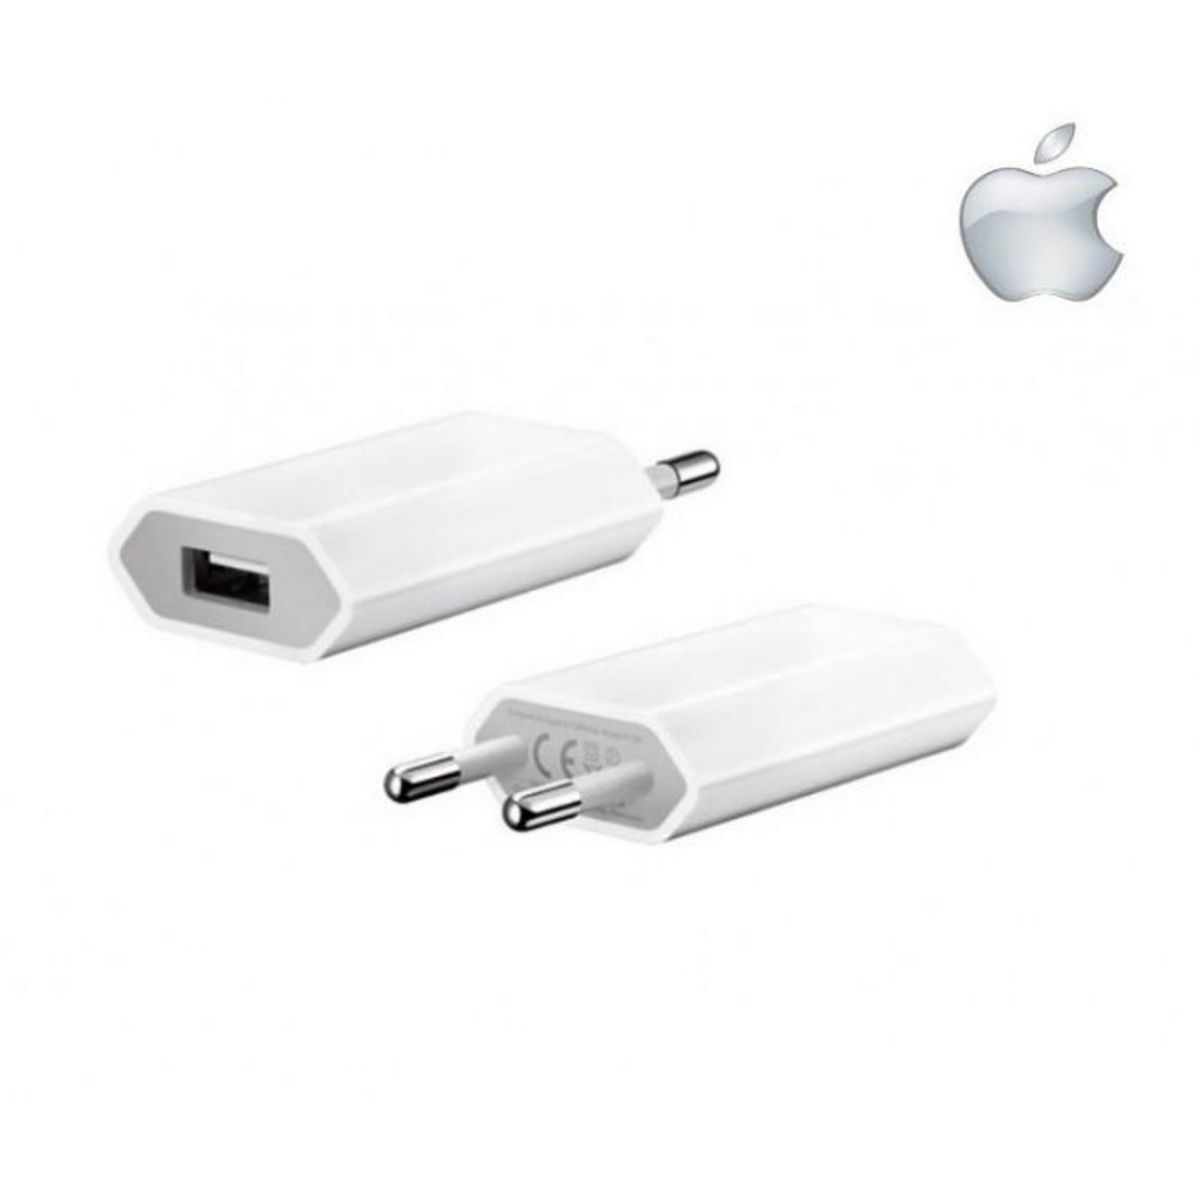  Adaptateur secteur chargeur Apple blanc puissance 1 Ampère pour iPhone